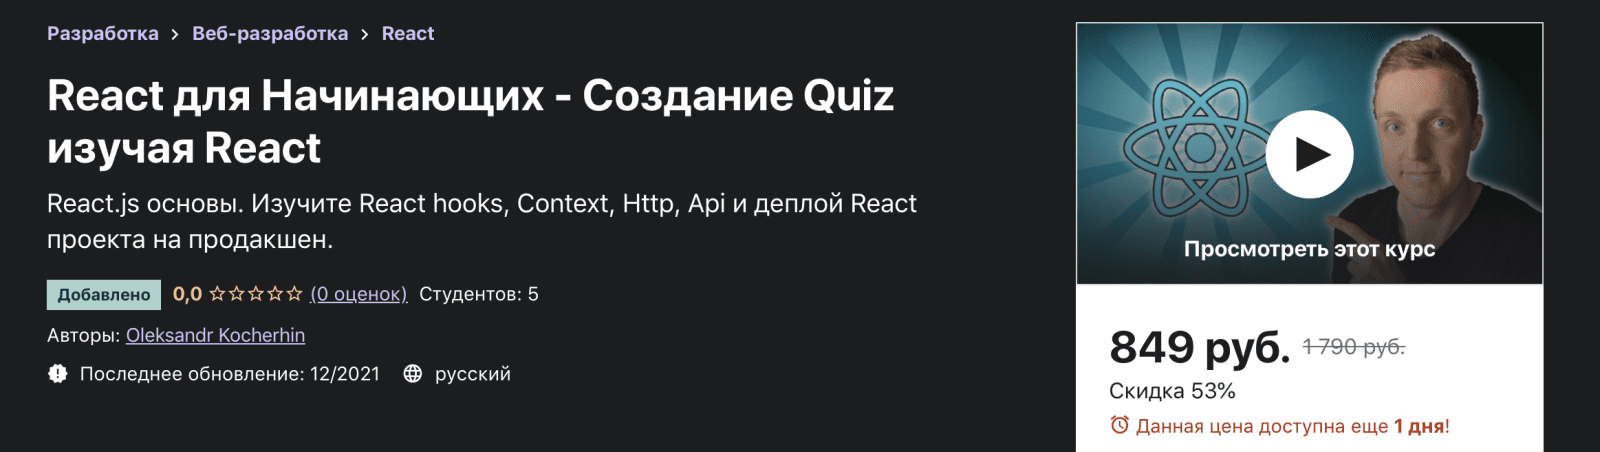 Изображение [Udemy] Oleksandr Kocherhin: React для Начинающих - Создание Quiz изучая React (2021) в посте 248659